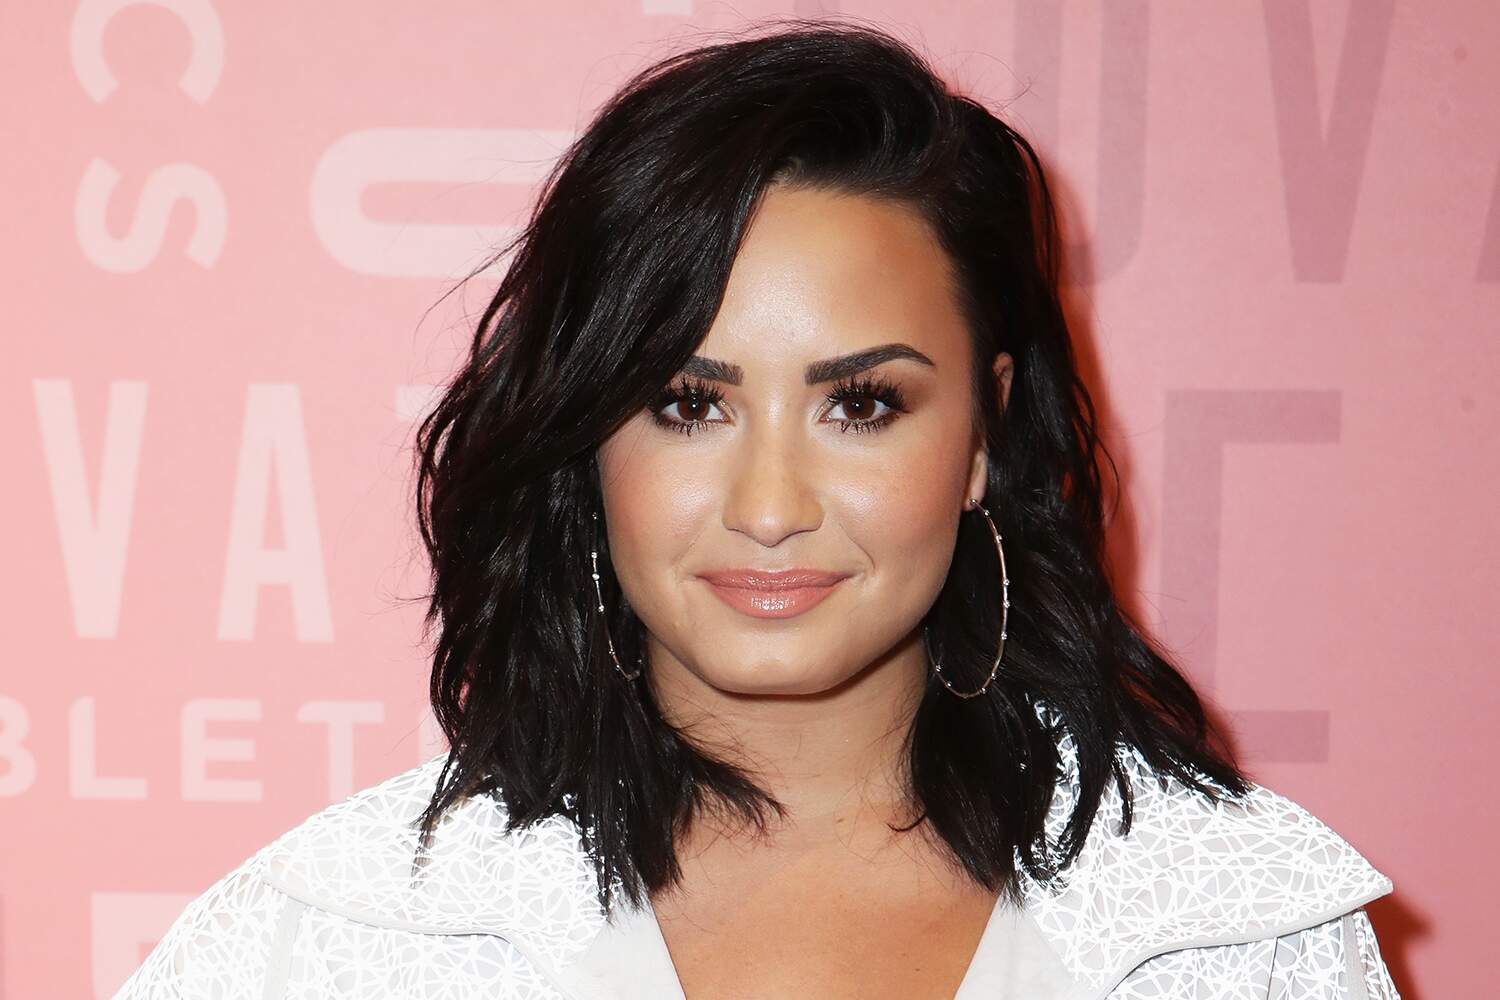 Em entrevista, Demi Lovato desabafa sobre vício em drogas no passado: ”Não sabia mais o que fazer” - Metropolitana FM